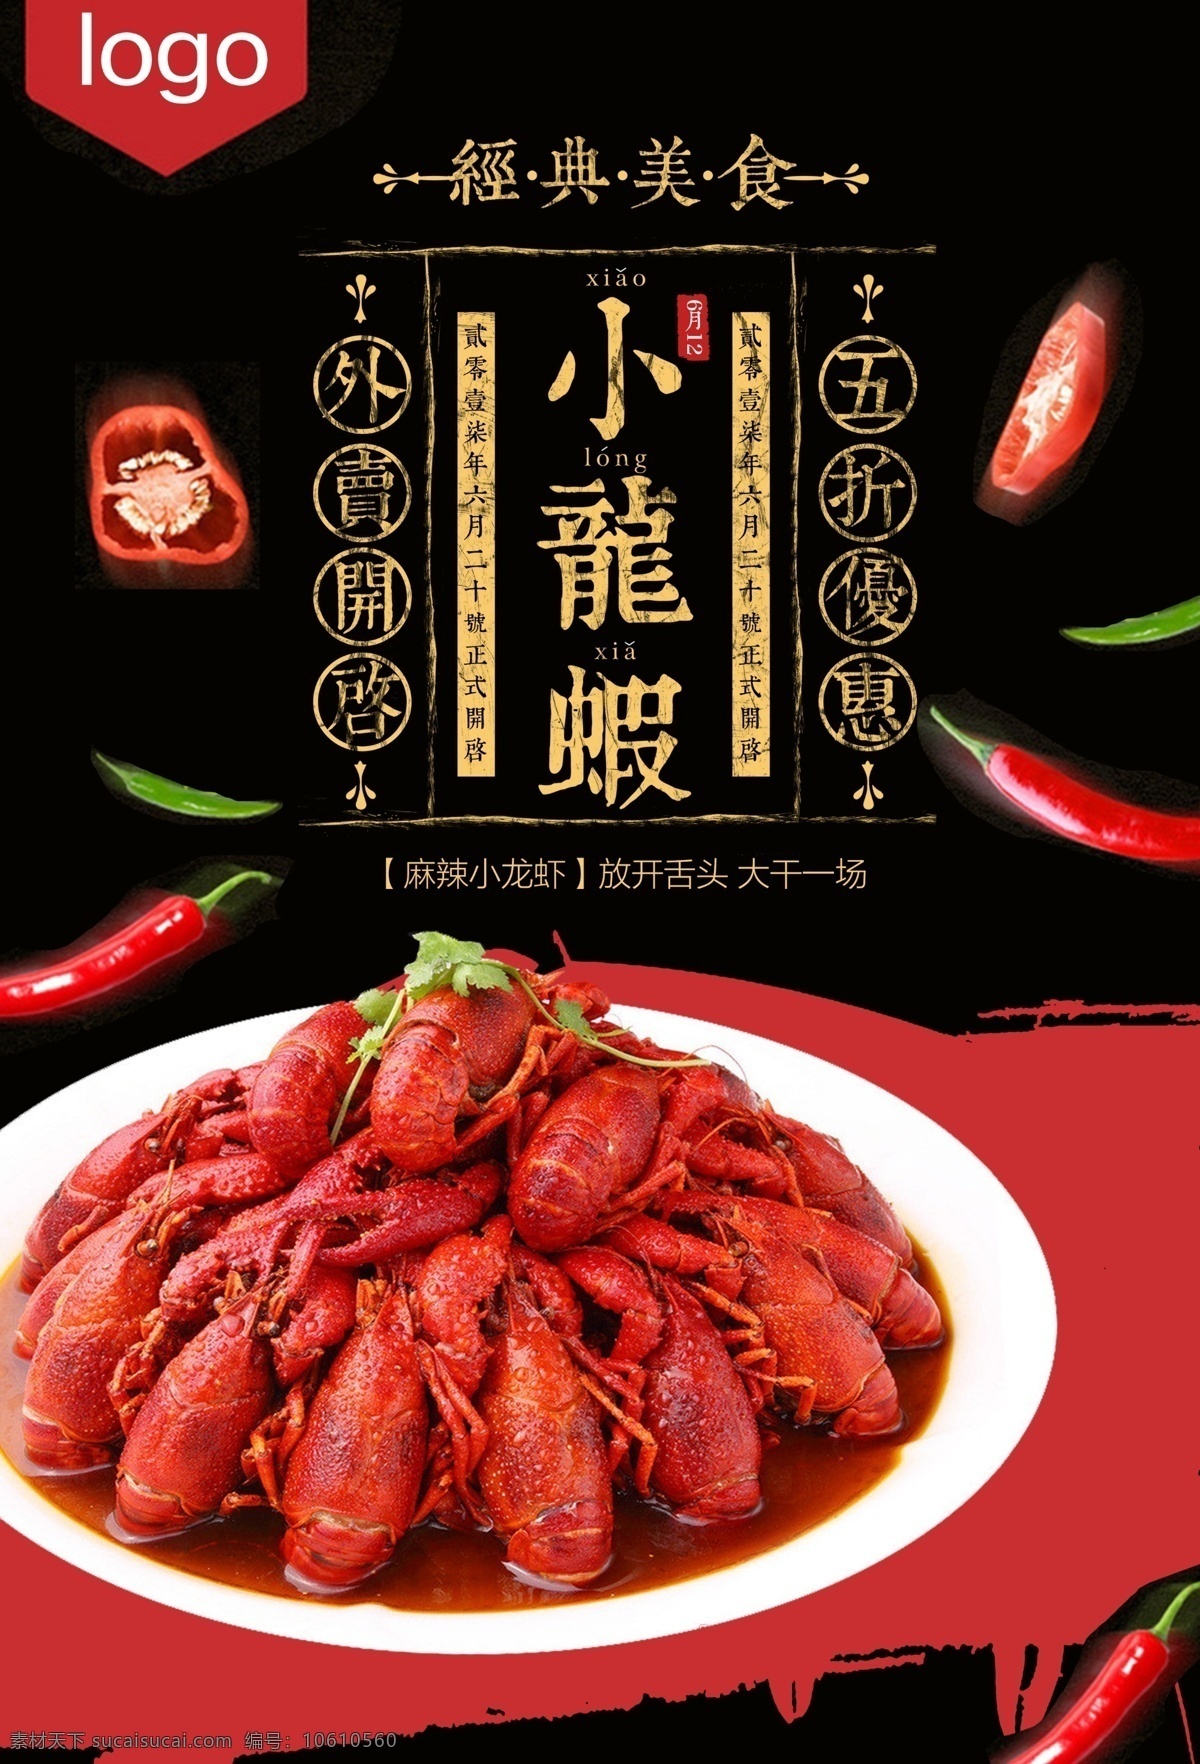 小 龙虾 美食 广告 小龙虾 美食广告 psd素材 海鲜 辣椒 展示 宣传 美食海报 招贴设计